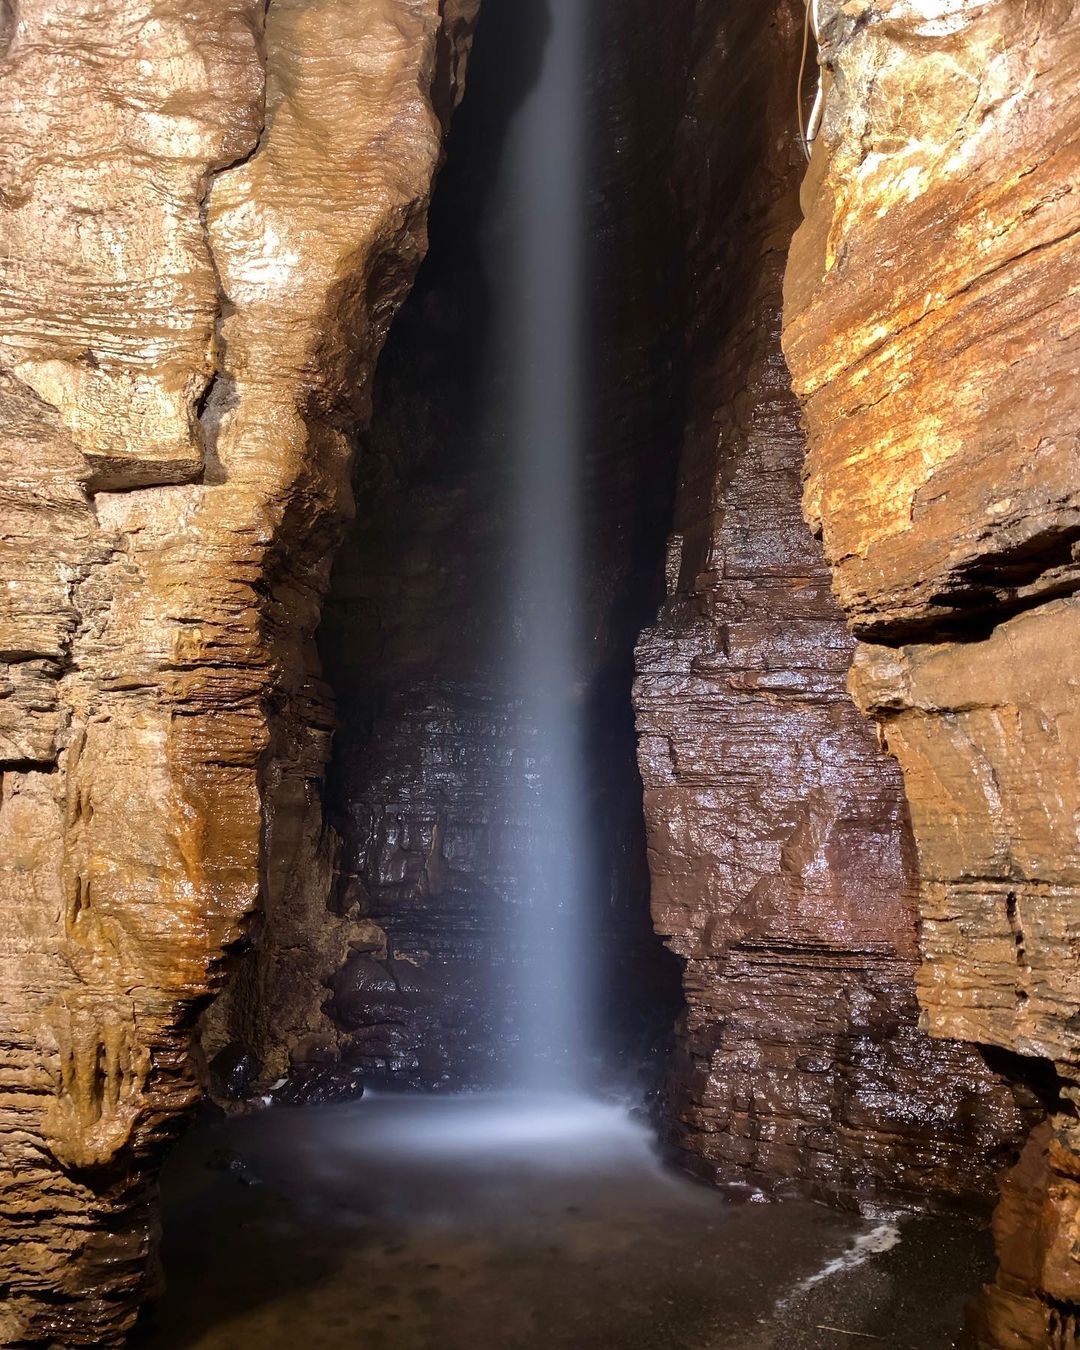 The underground waterfall in Secret Caverns